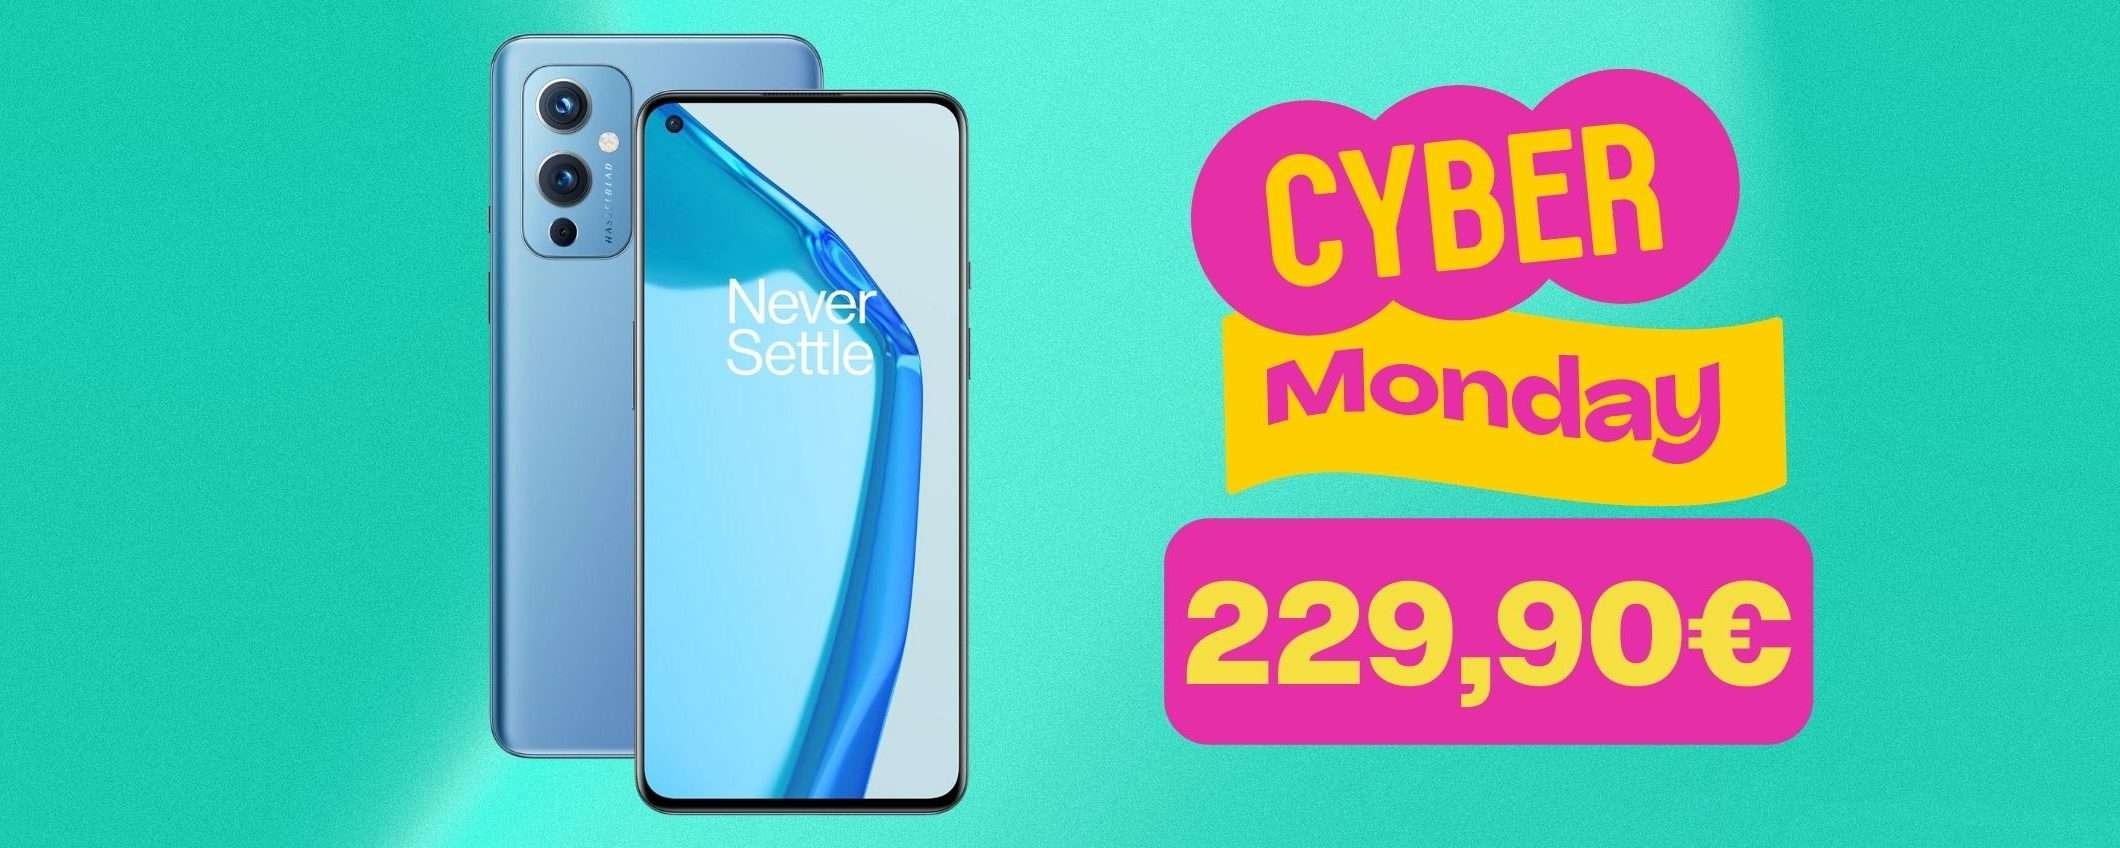 Cyber Monday Amazon: OnePlus 9 5G a 229,90€ invece di 719€